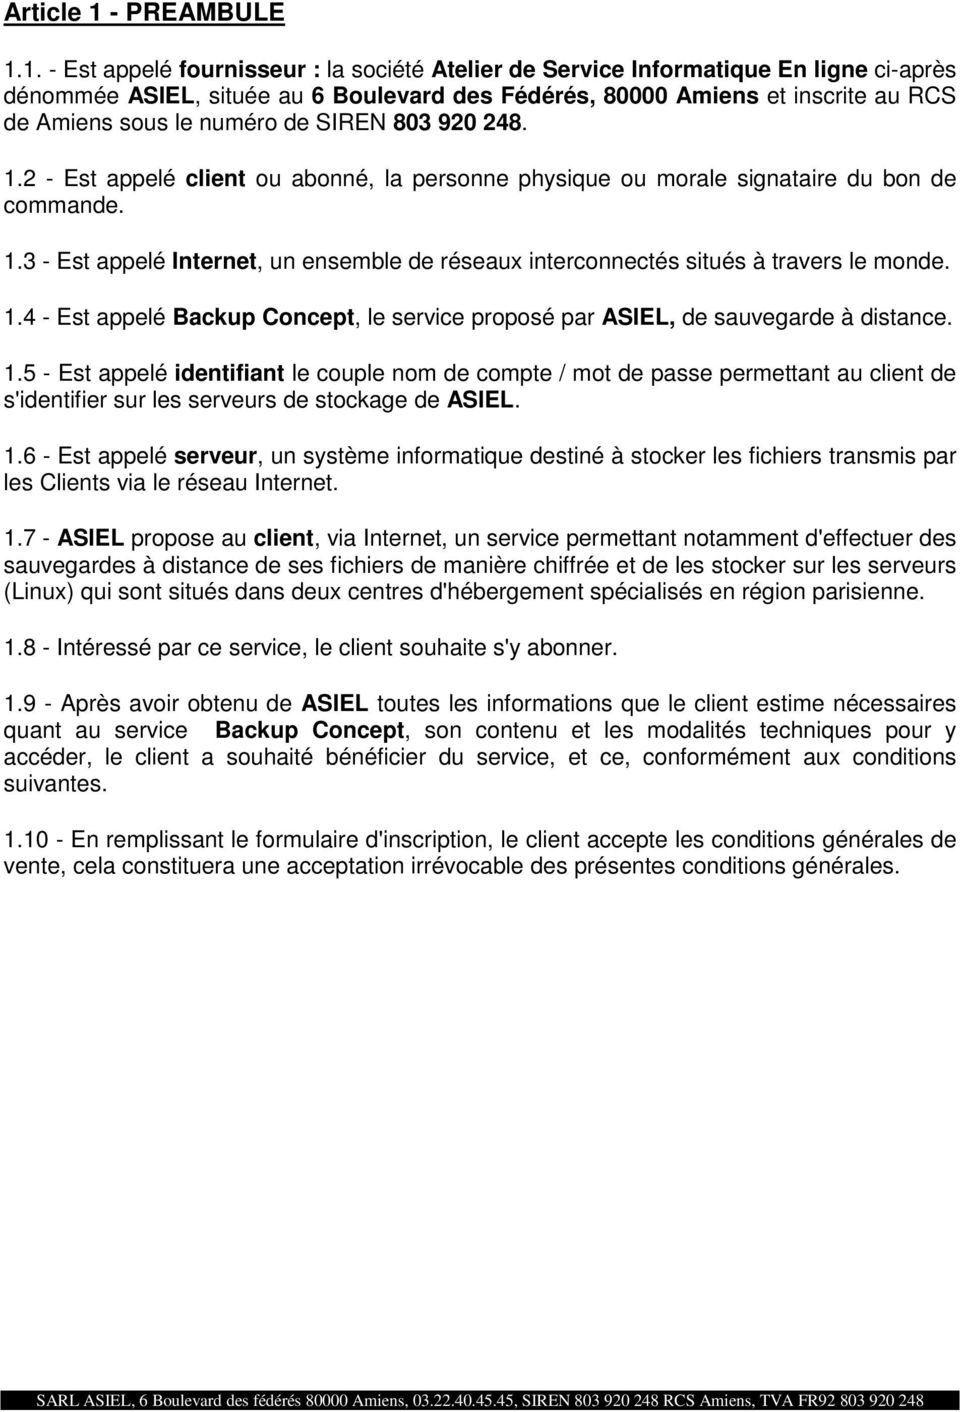 1. - Est appelé fournisseur : la société Atelier de Service Informatique En ligne ci-après dénommée ASIEL, située au 6 Boulevard des Fédérés, 80000 Amiens et inscrite au RCS de Amiens sous le numéro